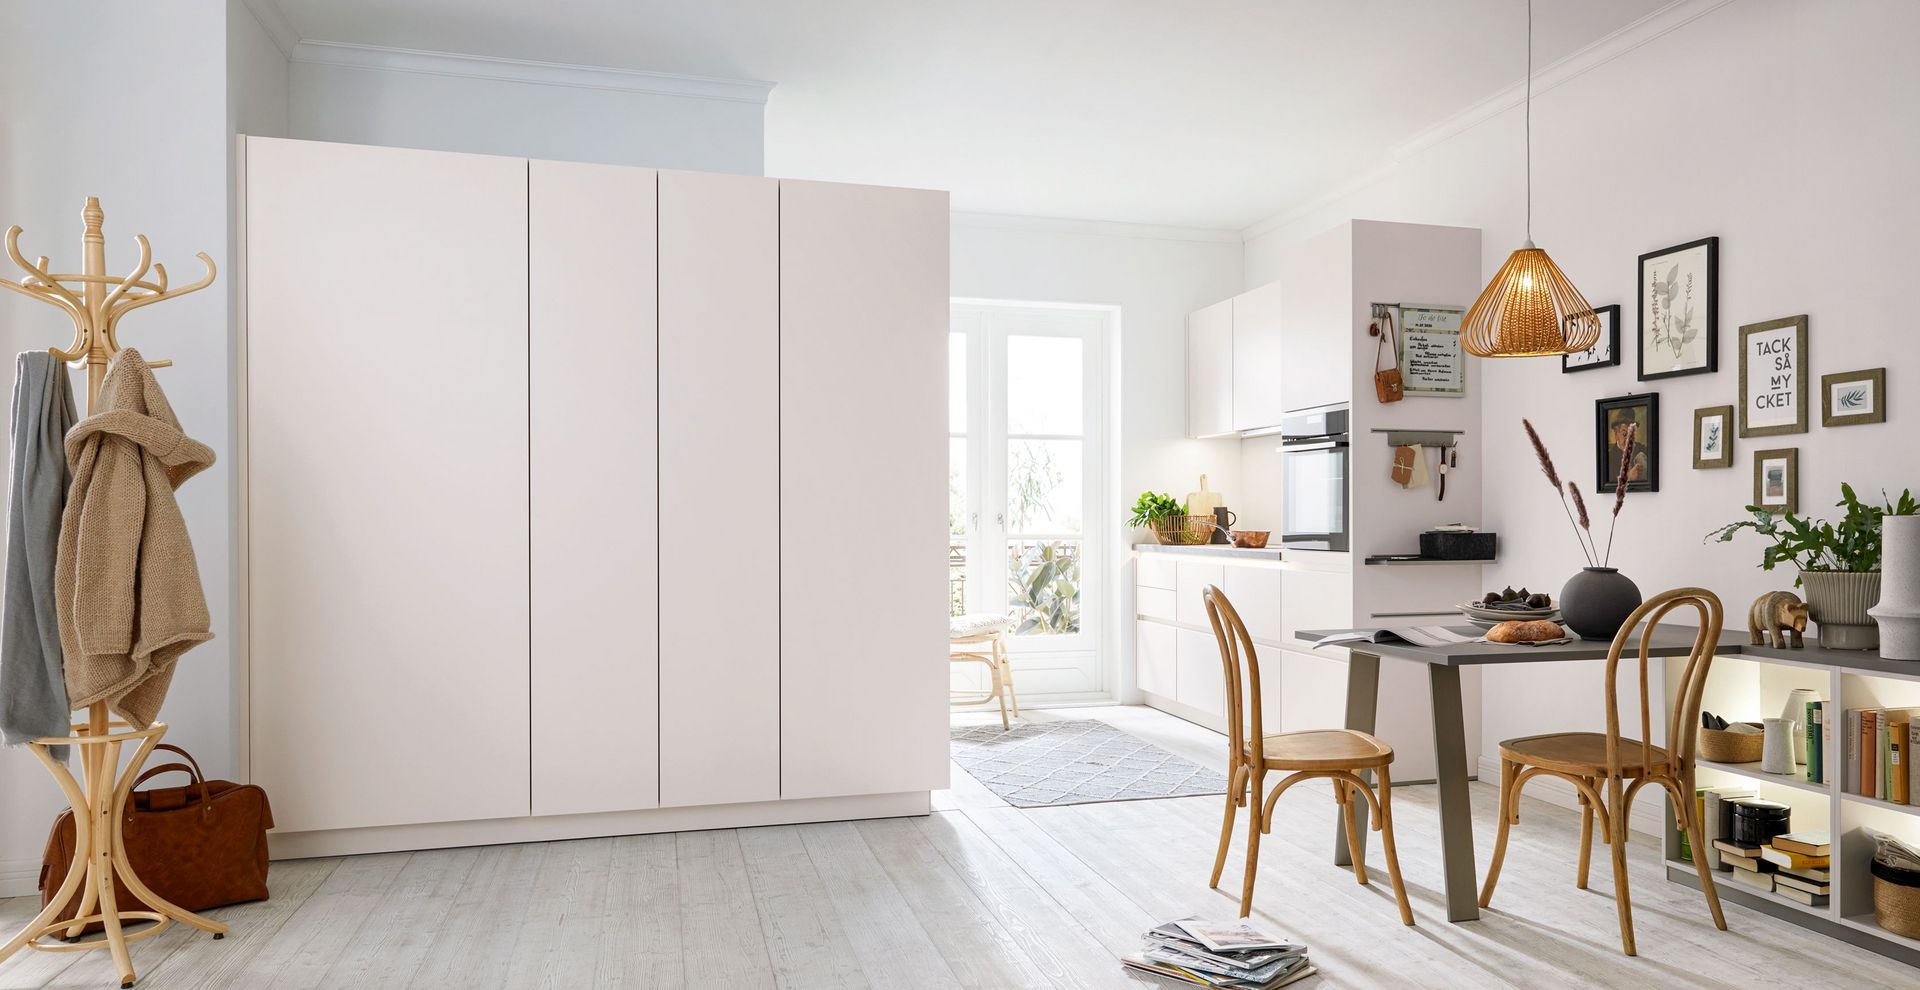 Schuller Nova Seashell White – a perfect small kitchen